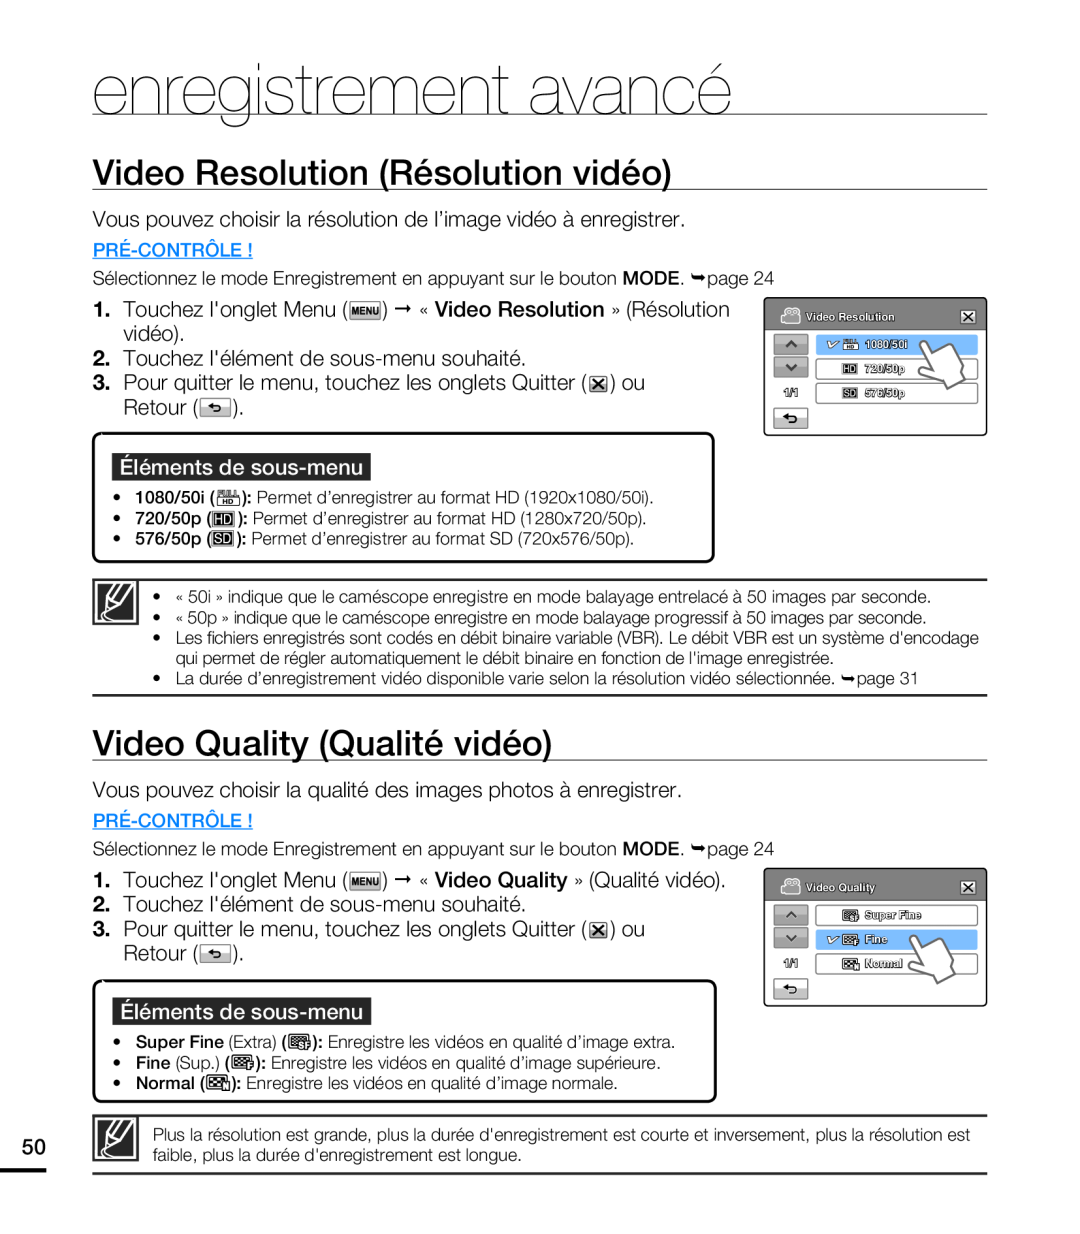 Samsung HMX-T10WP/EDC Video Resolution Résolution vidéo, Video Quality Qualité vidéo, enregistrement avancé, Pré-Contrôle 